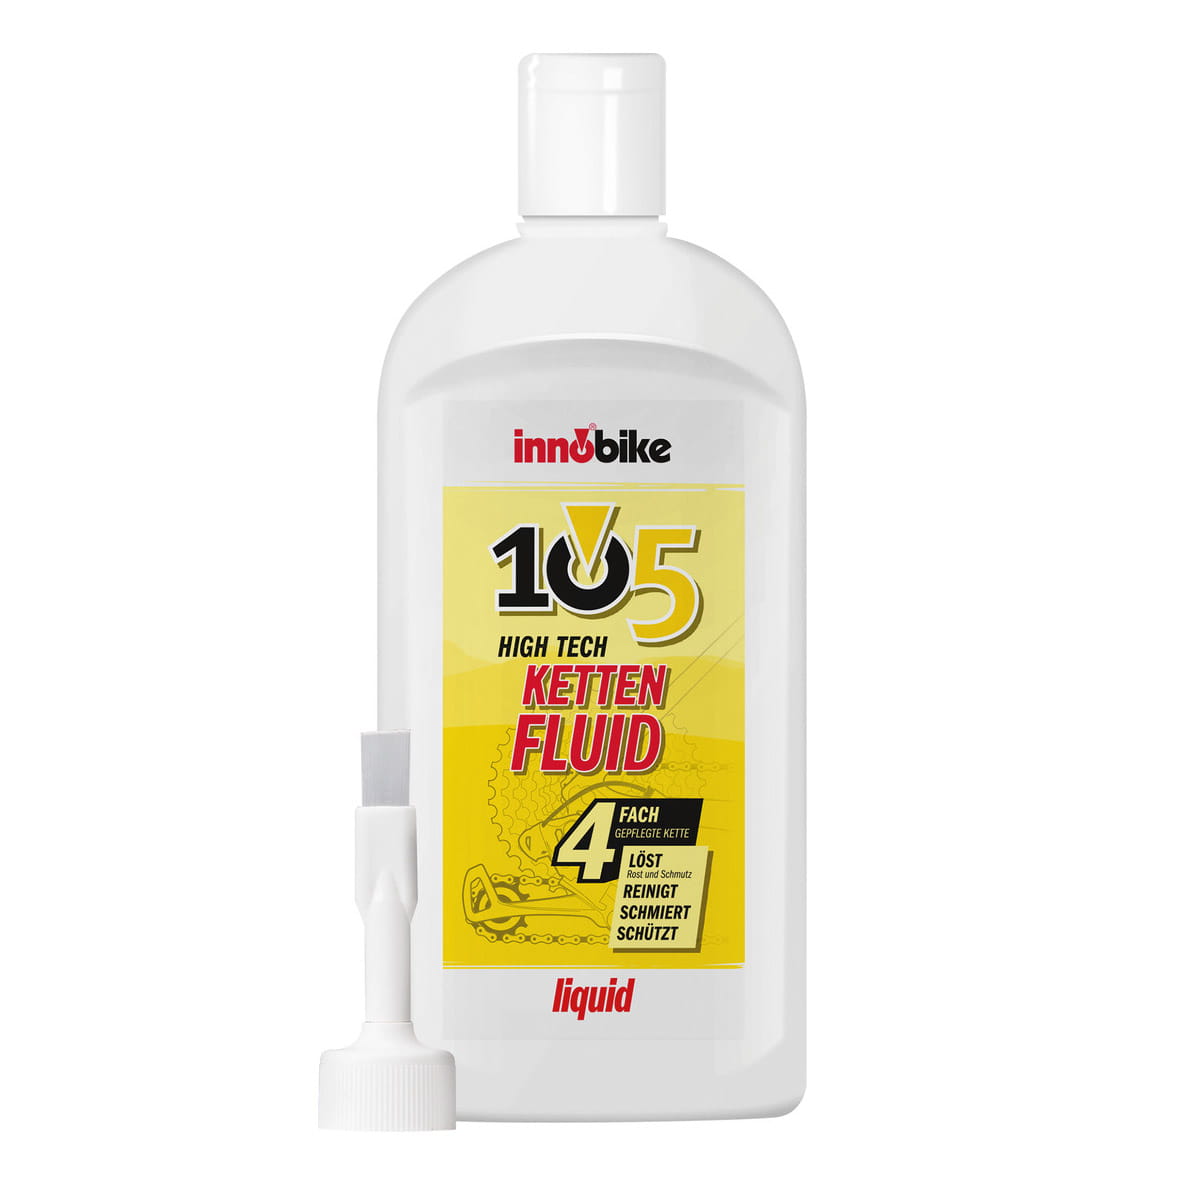 Innobike 105 High Tech Kettenfluid Liquid 300 ml with Pinselaufsatz